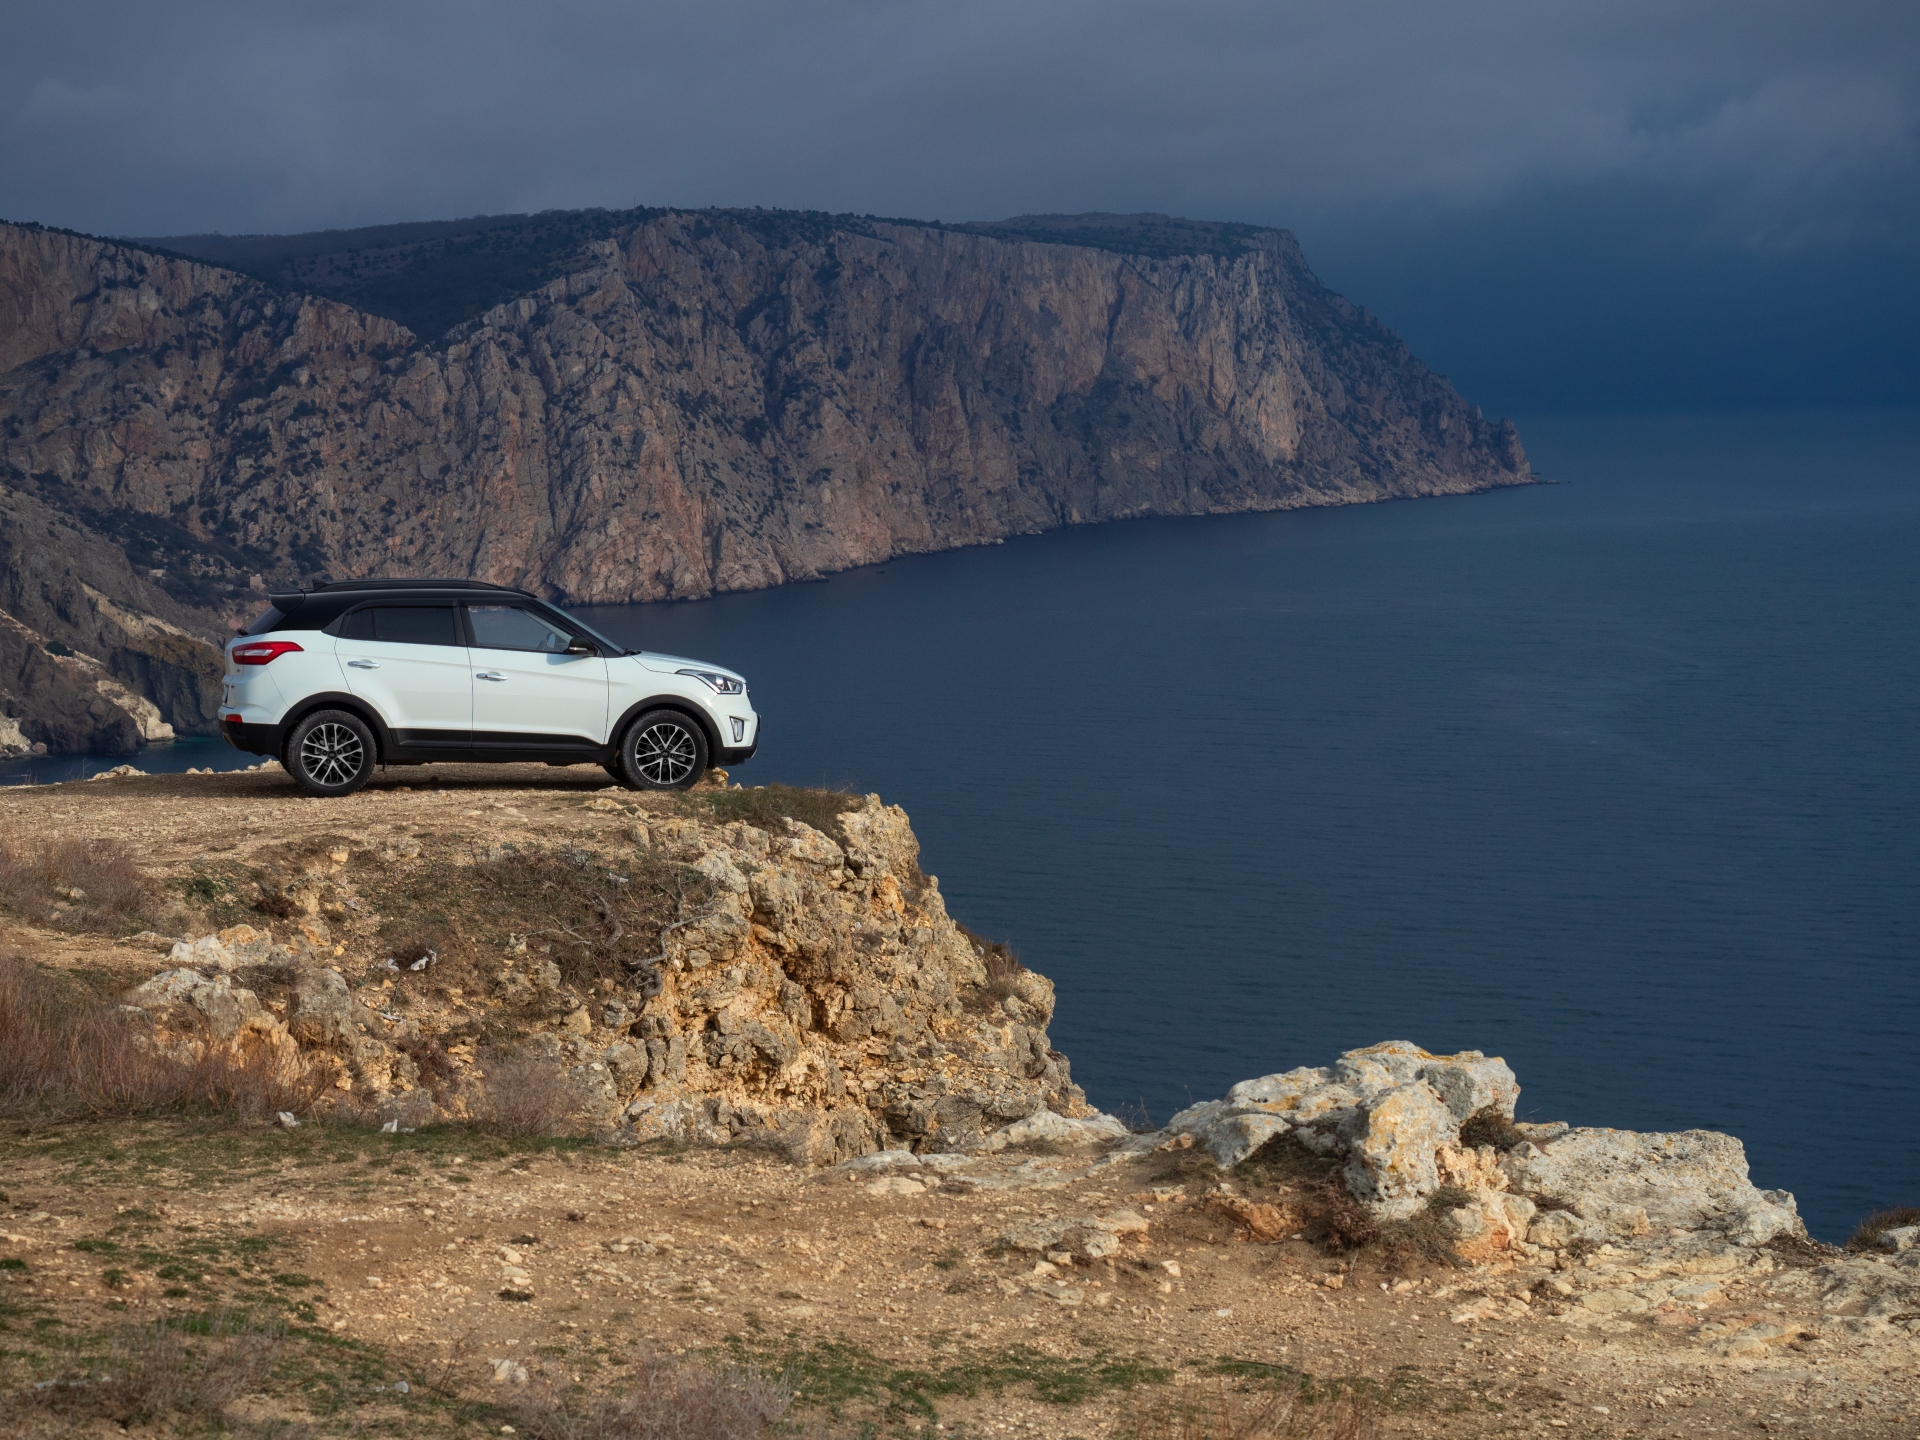 Hyundai Creta: четыре года на российском рынке